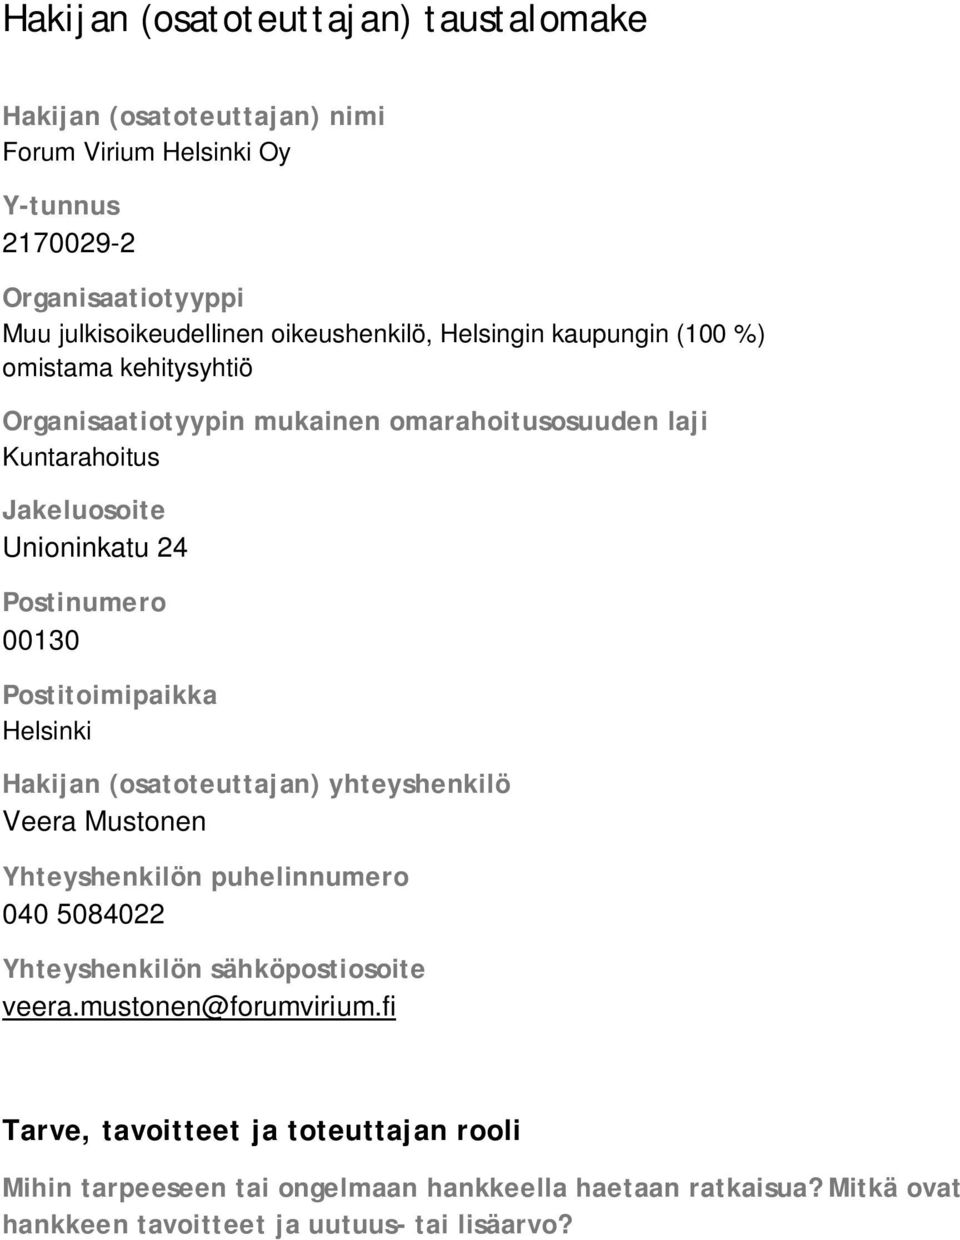 Postinumero 00130 Postitoimipaikka Helsinki Hakijan (osatoteuttajan) yhteyshenkilö Veera Mustonen Yhteyshenkilön puhelinnumero 040 5084022 Yhteyshenkilön